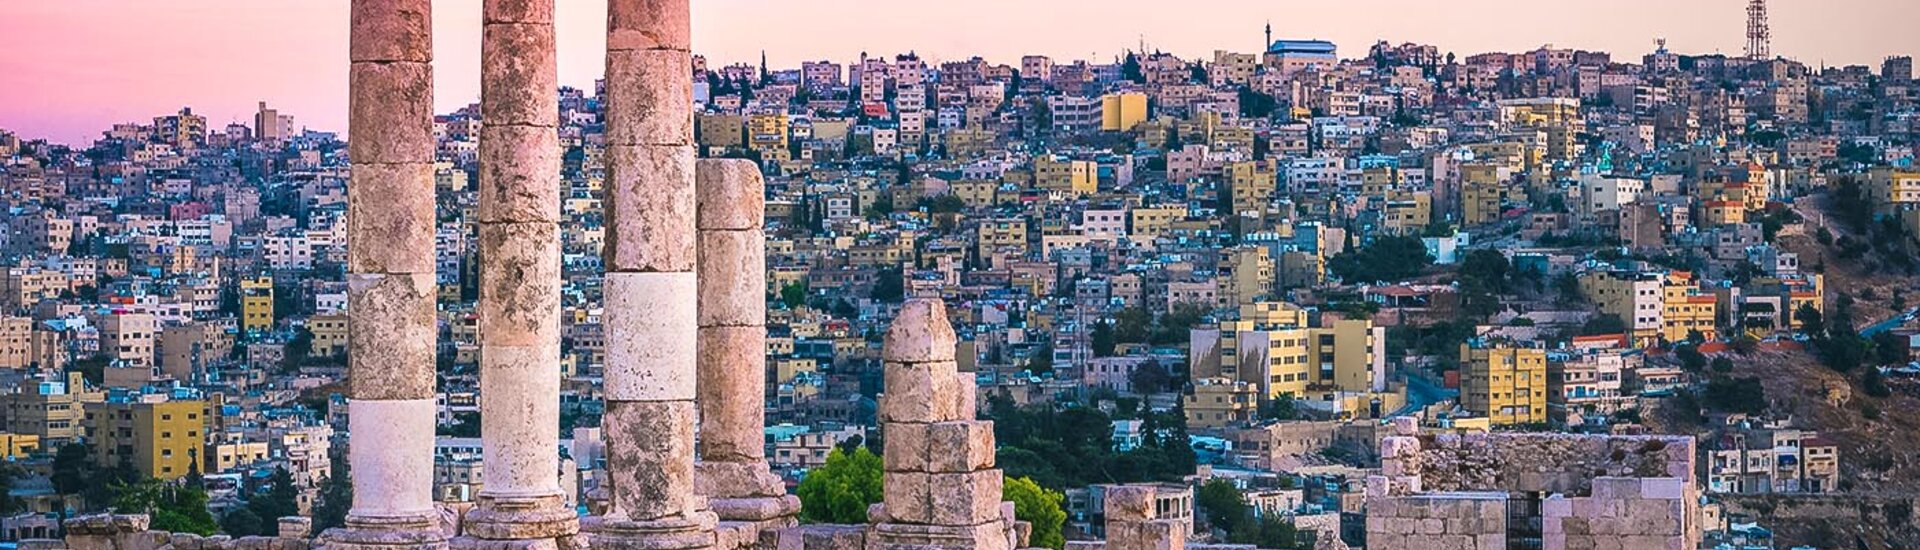 Zitadellen in Amman, Jordanien